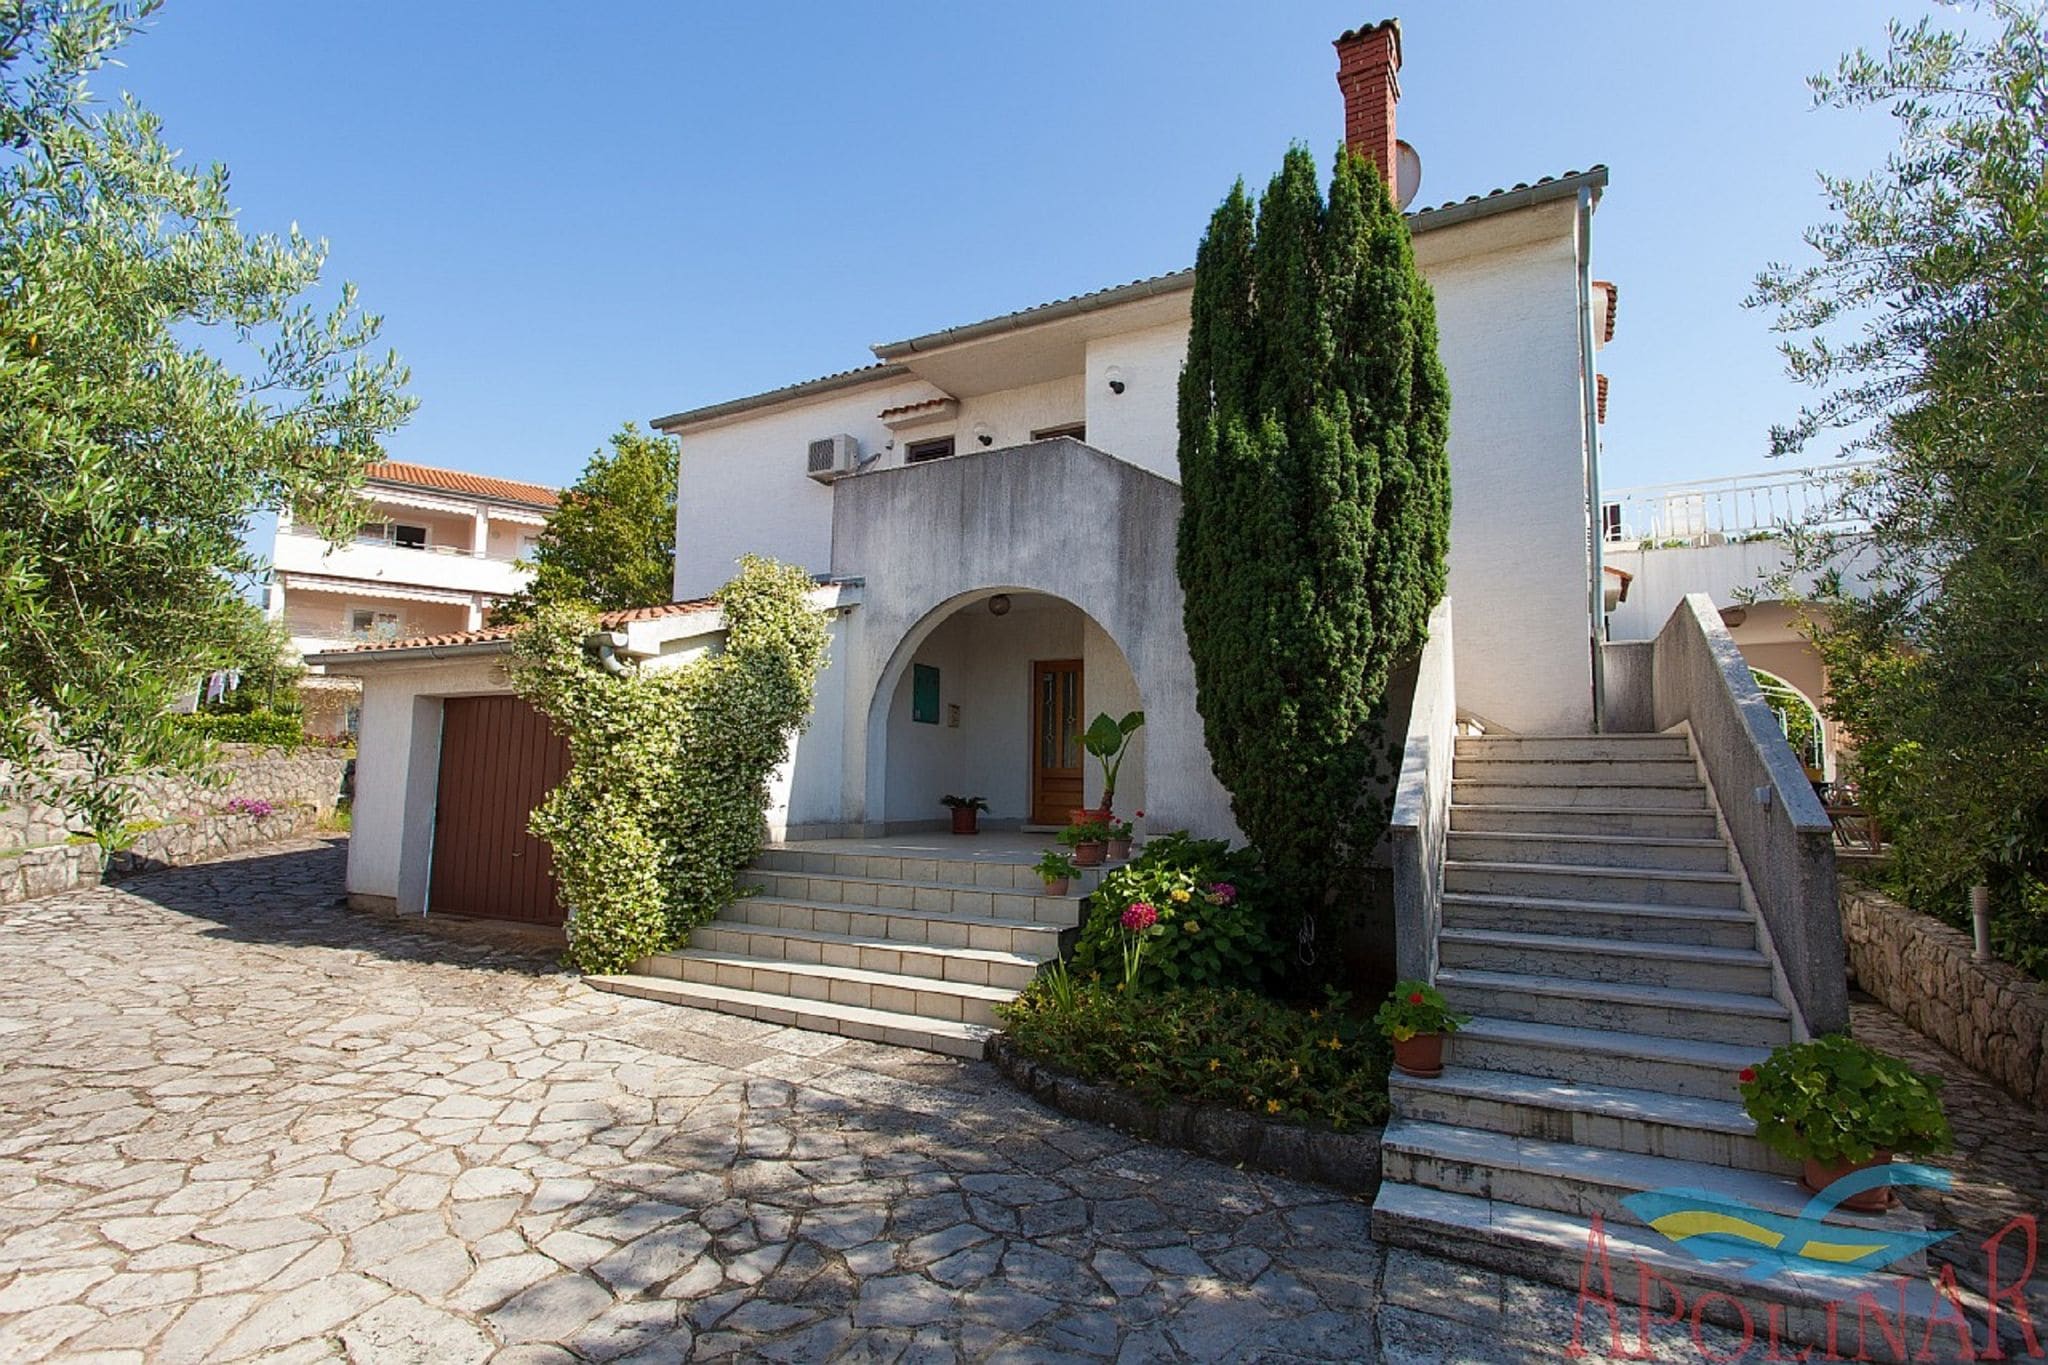 Appartement spacieux dans les îles croates avec terrasse